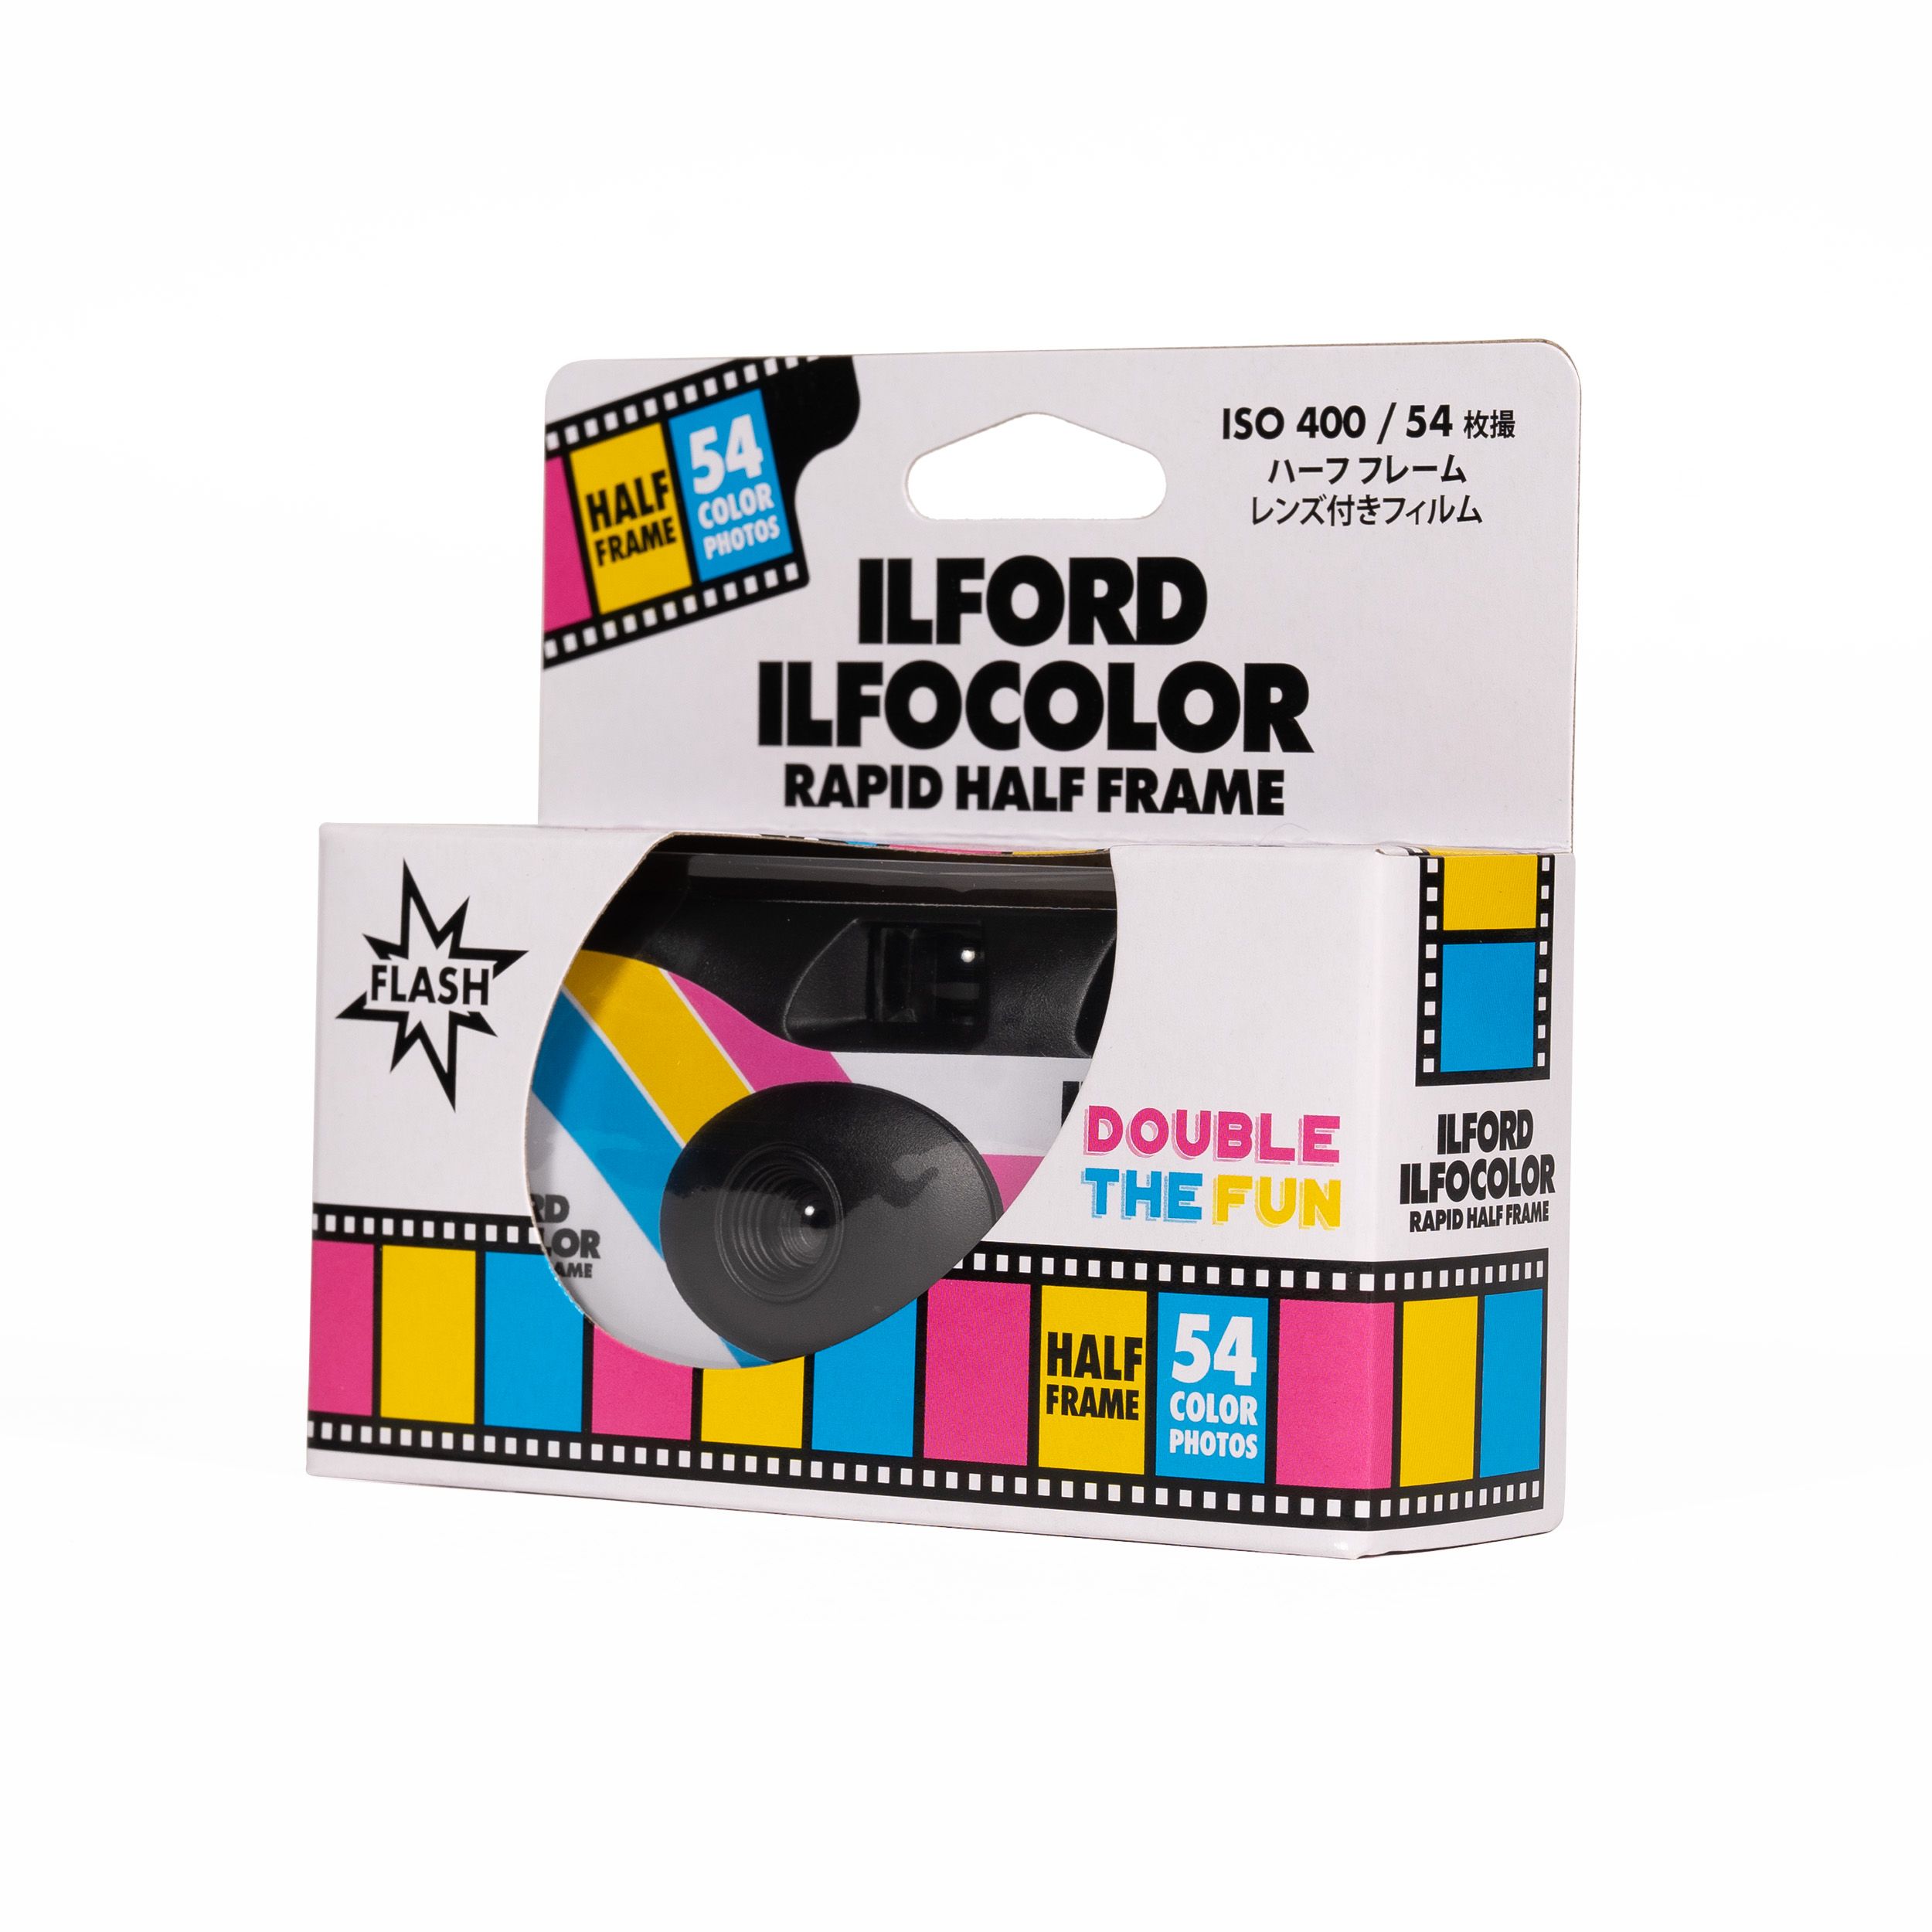 Ilford IlfoColor Rapid Half-Frame Colour Film Camera - Includes 54 Exposures